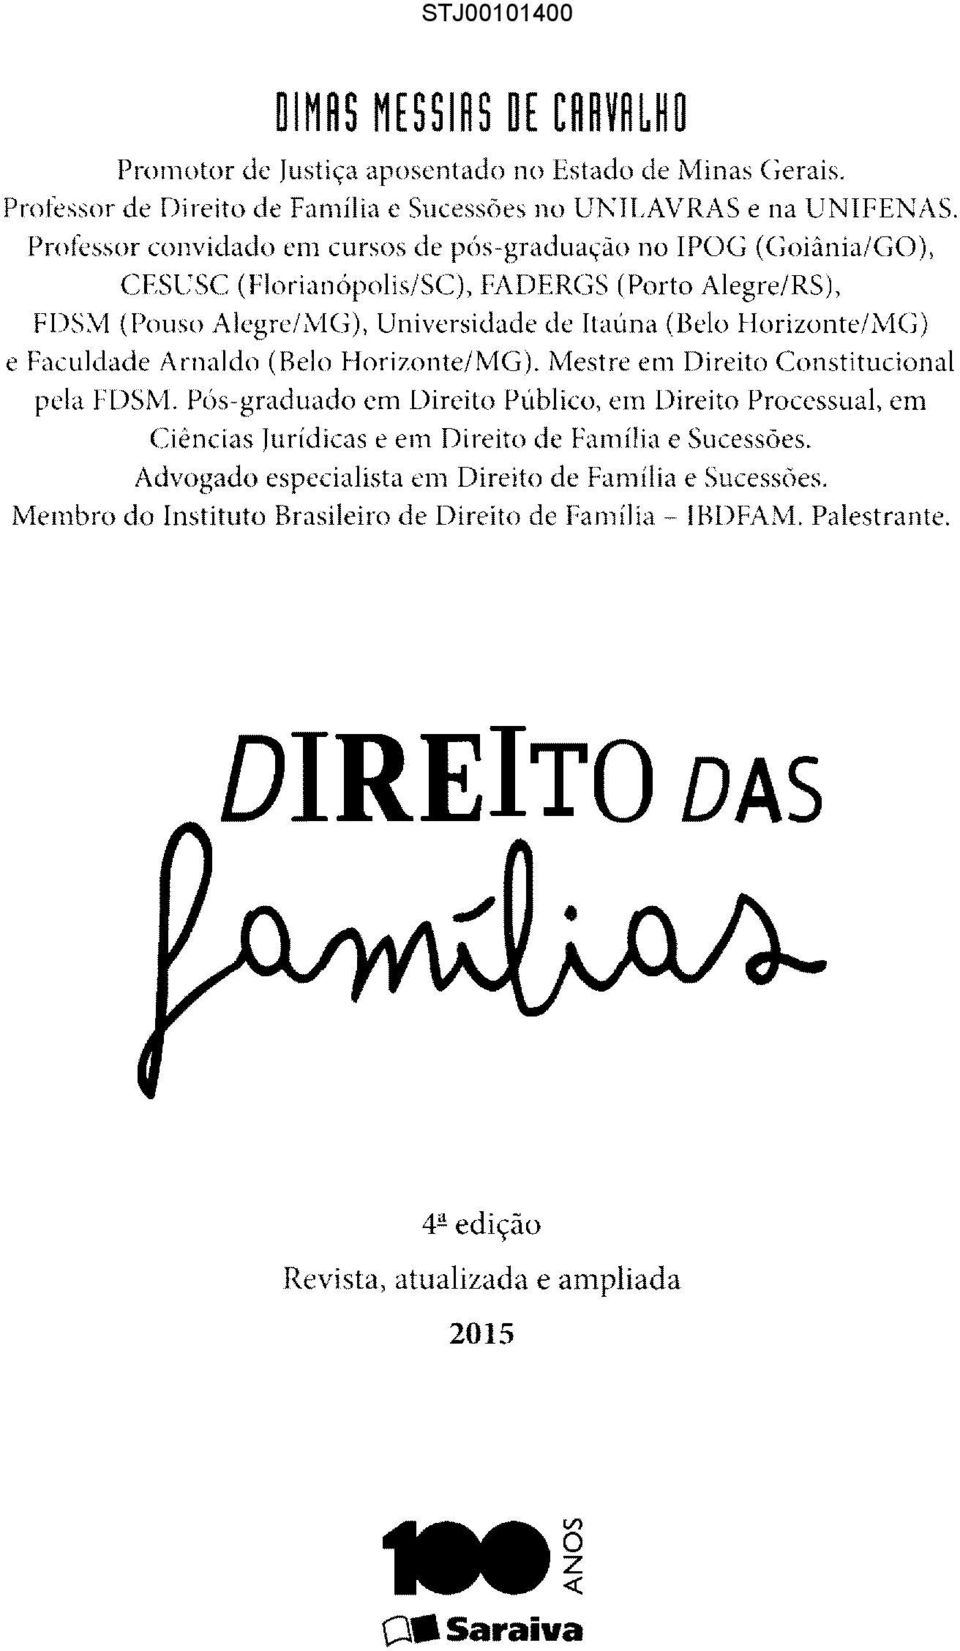 Horizonte/MG) e Faculdade Arnaldo (Belo Horizonte/MG). Mestre em Direito Constitucional pela FDSM.